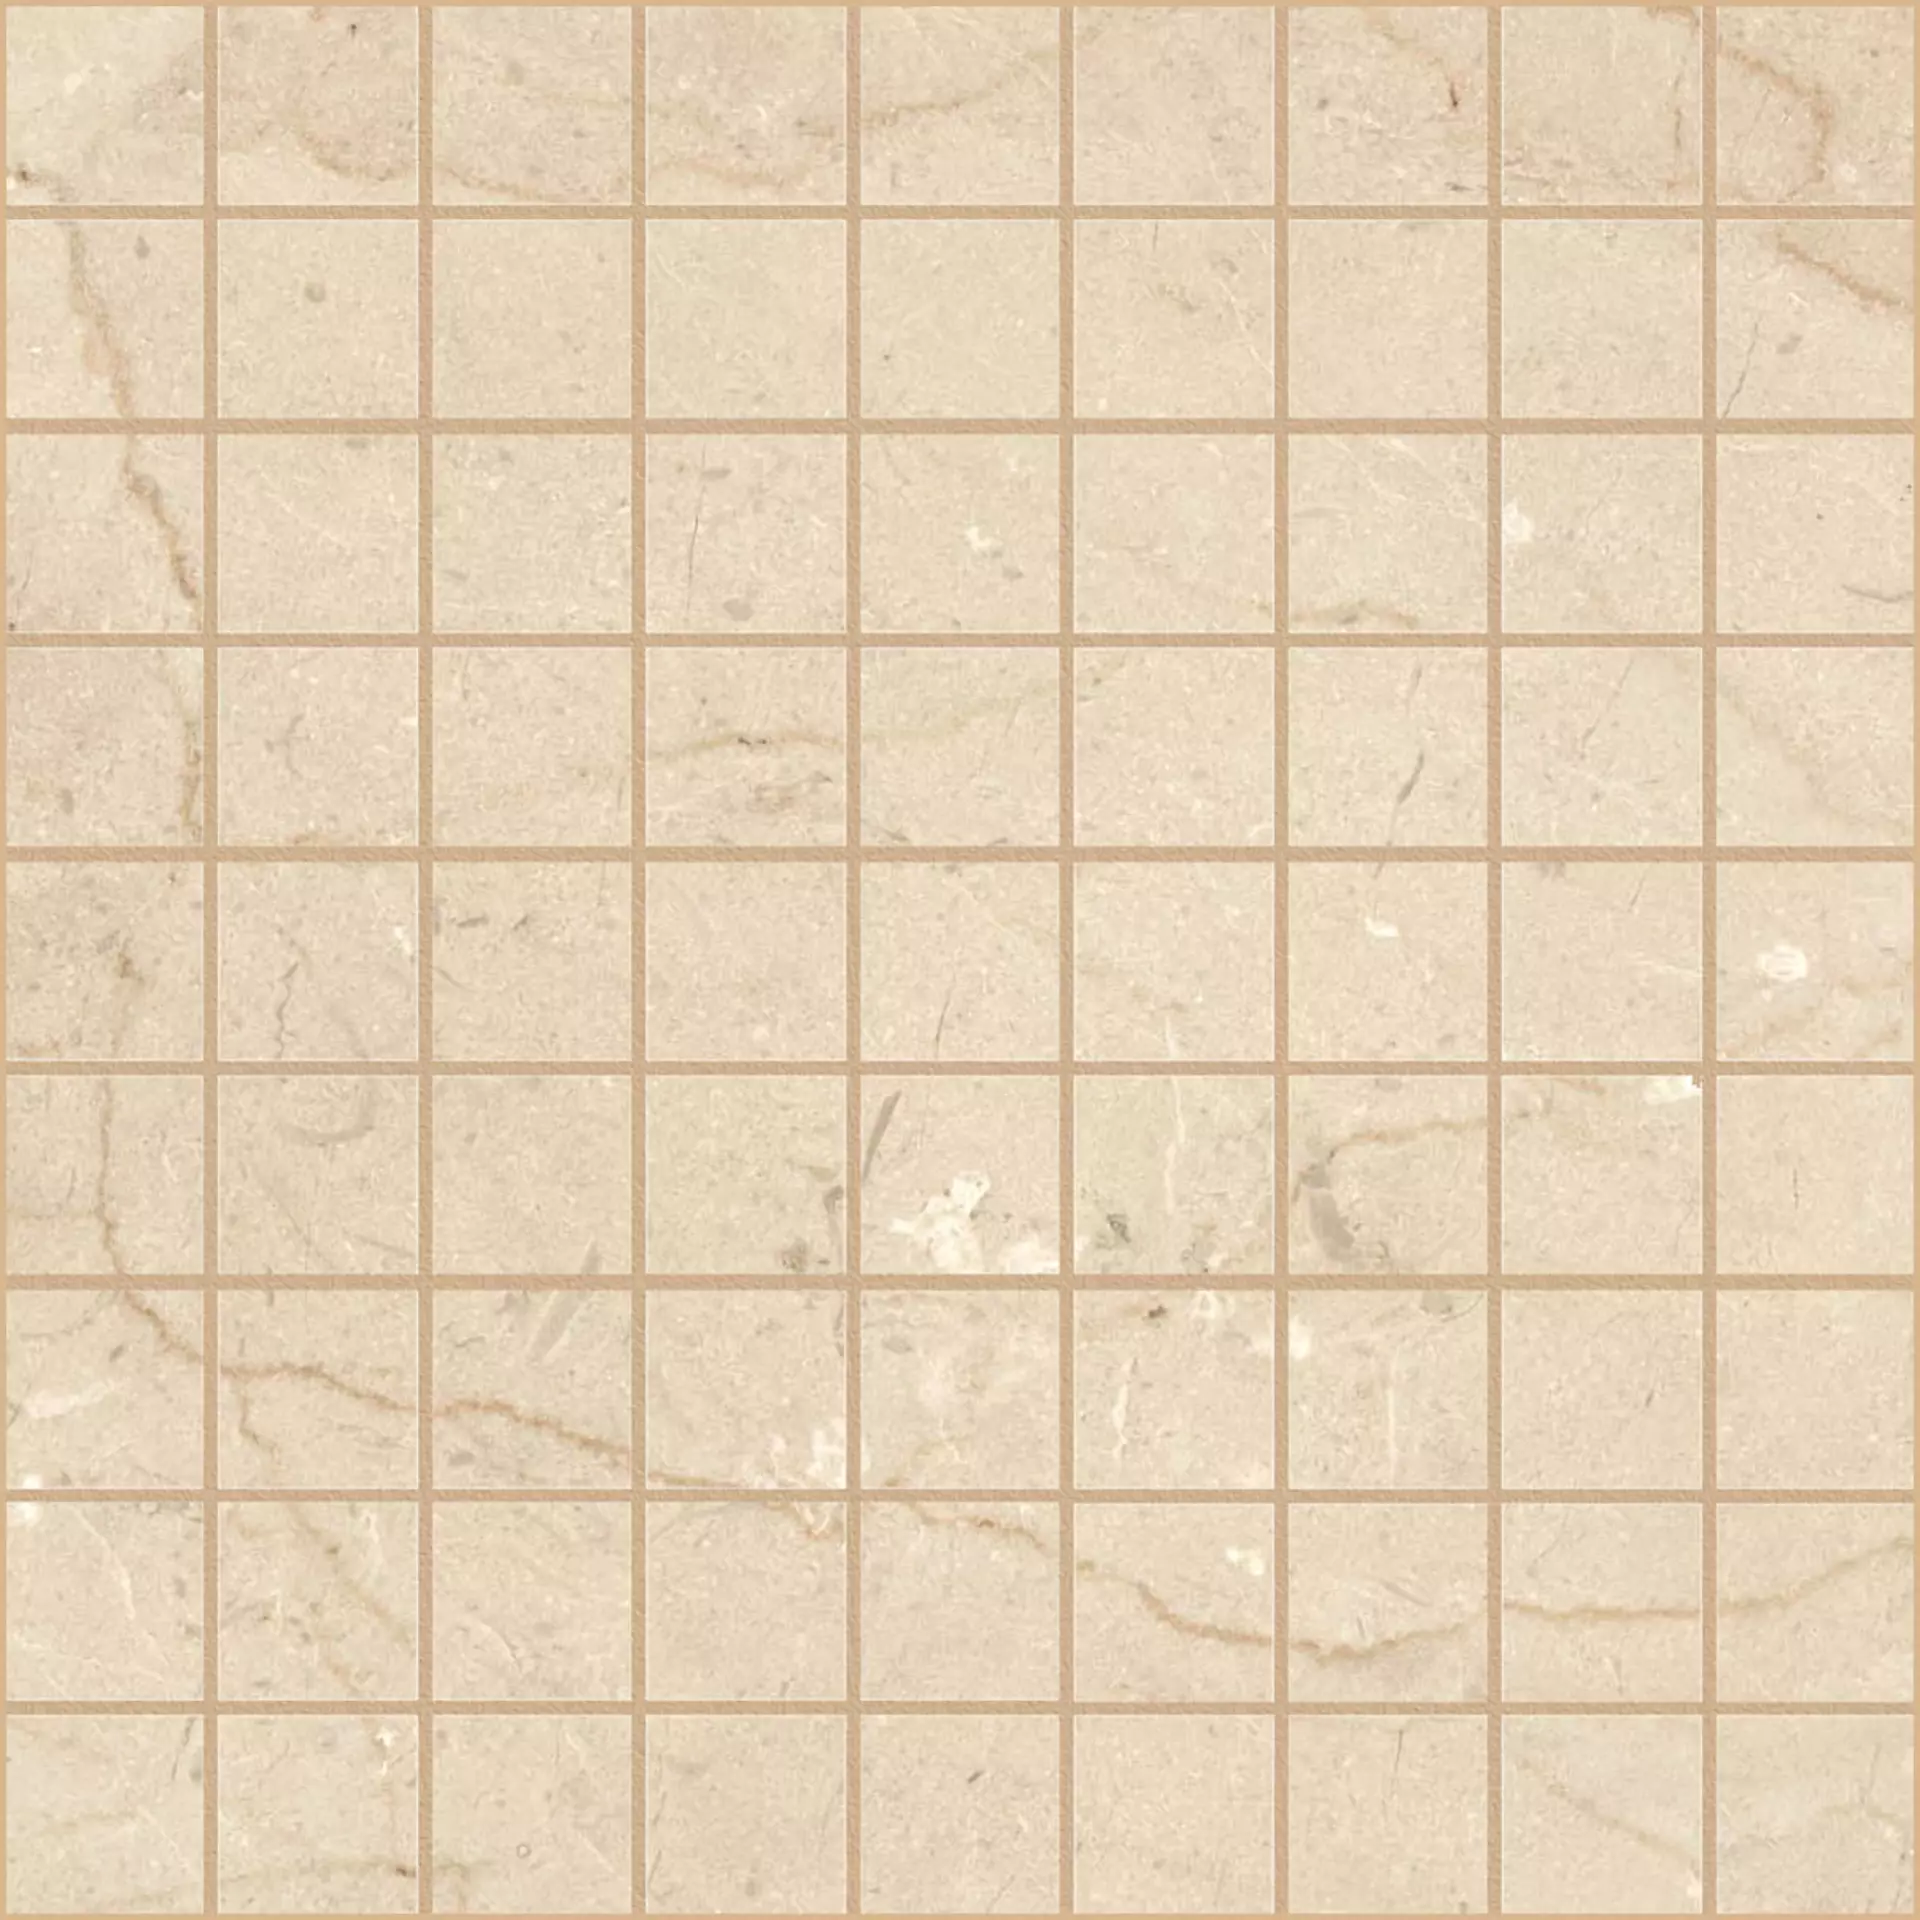 Ragno Incanto Beige Naturale – Matt Mosaic RANM naturale – matt 30x30cm 10mm